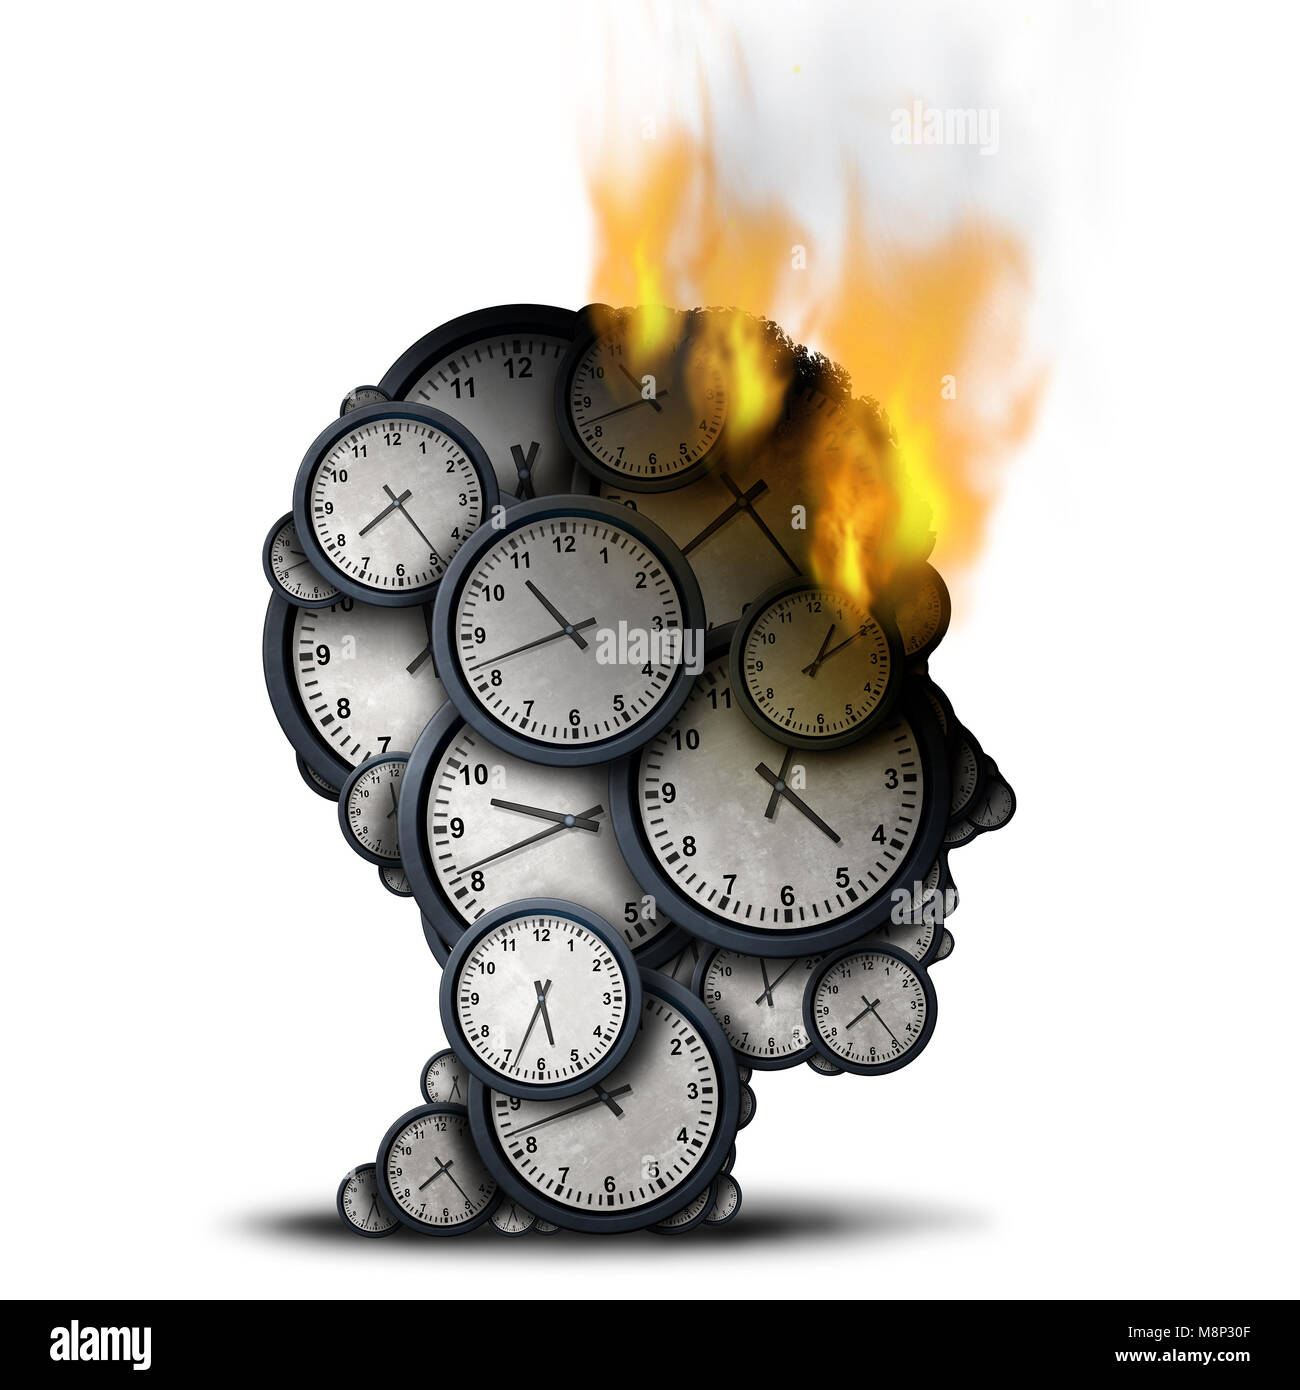 Tiempo de combustión concepto como un negocio idea de estrés con una cabeza humana hecha de relojes que se prende fuego como una metáfora de la presión límite corporativo. Foto de stock